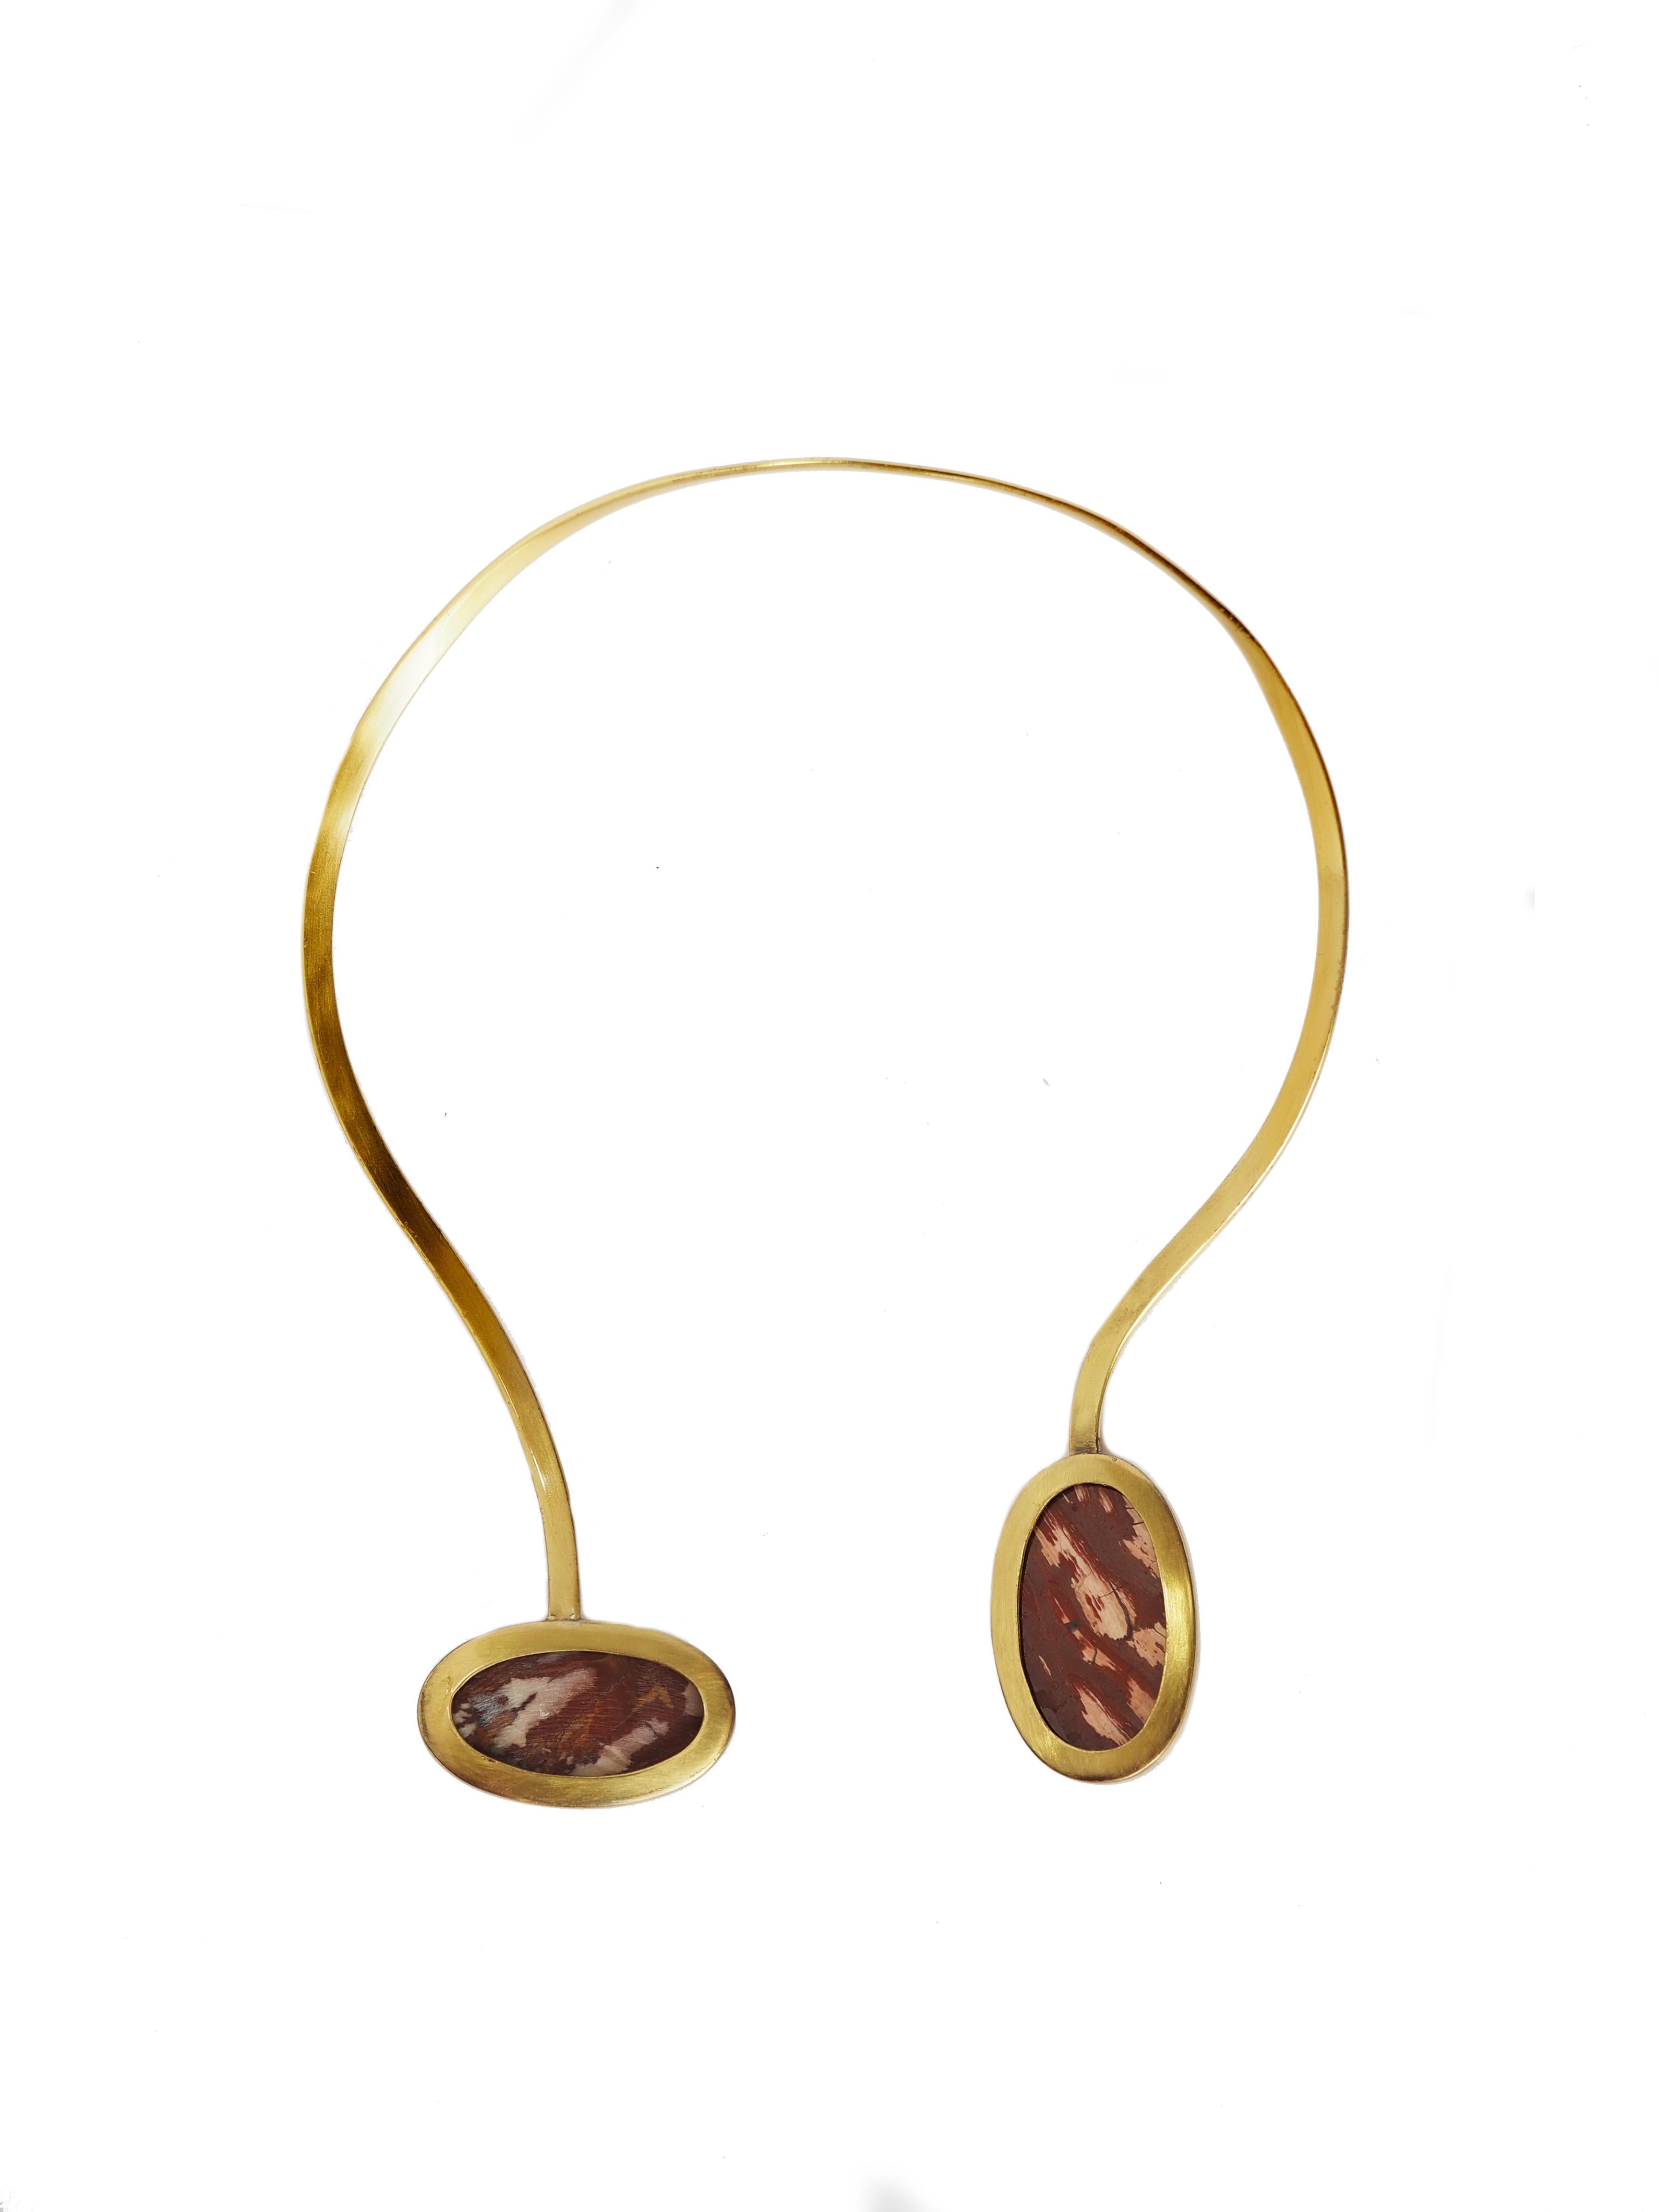 asymmetrische Halskette mit 2 erstaunlichen ovalen Jaspisformen, die in Bronze verbunden sind.
Alle Giulia Colussi-Schmuckstücke sind neu und wurden noch nie zuvor getragen. Jeder Artikel kommt schön verpackt in unseren Schachteln in einem eleganten